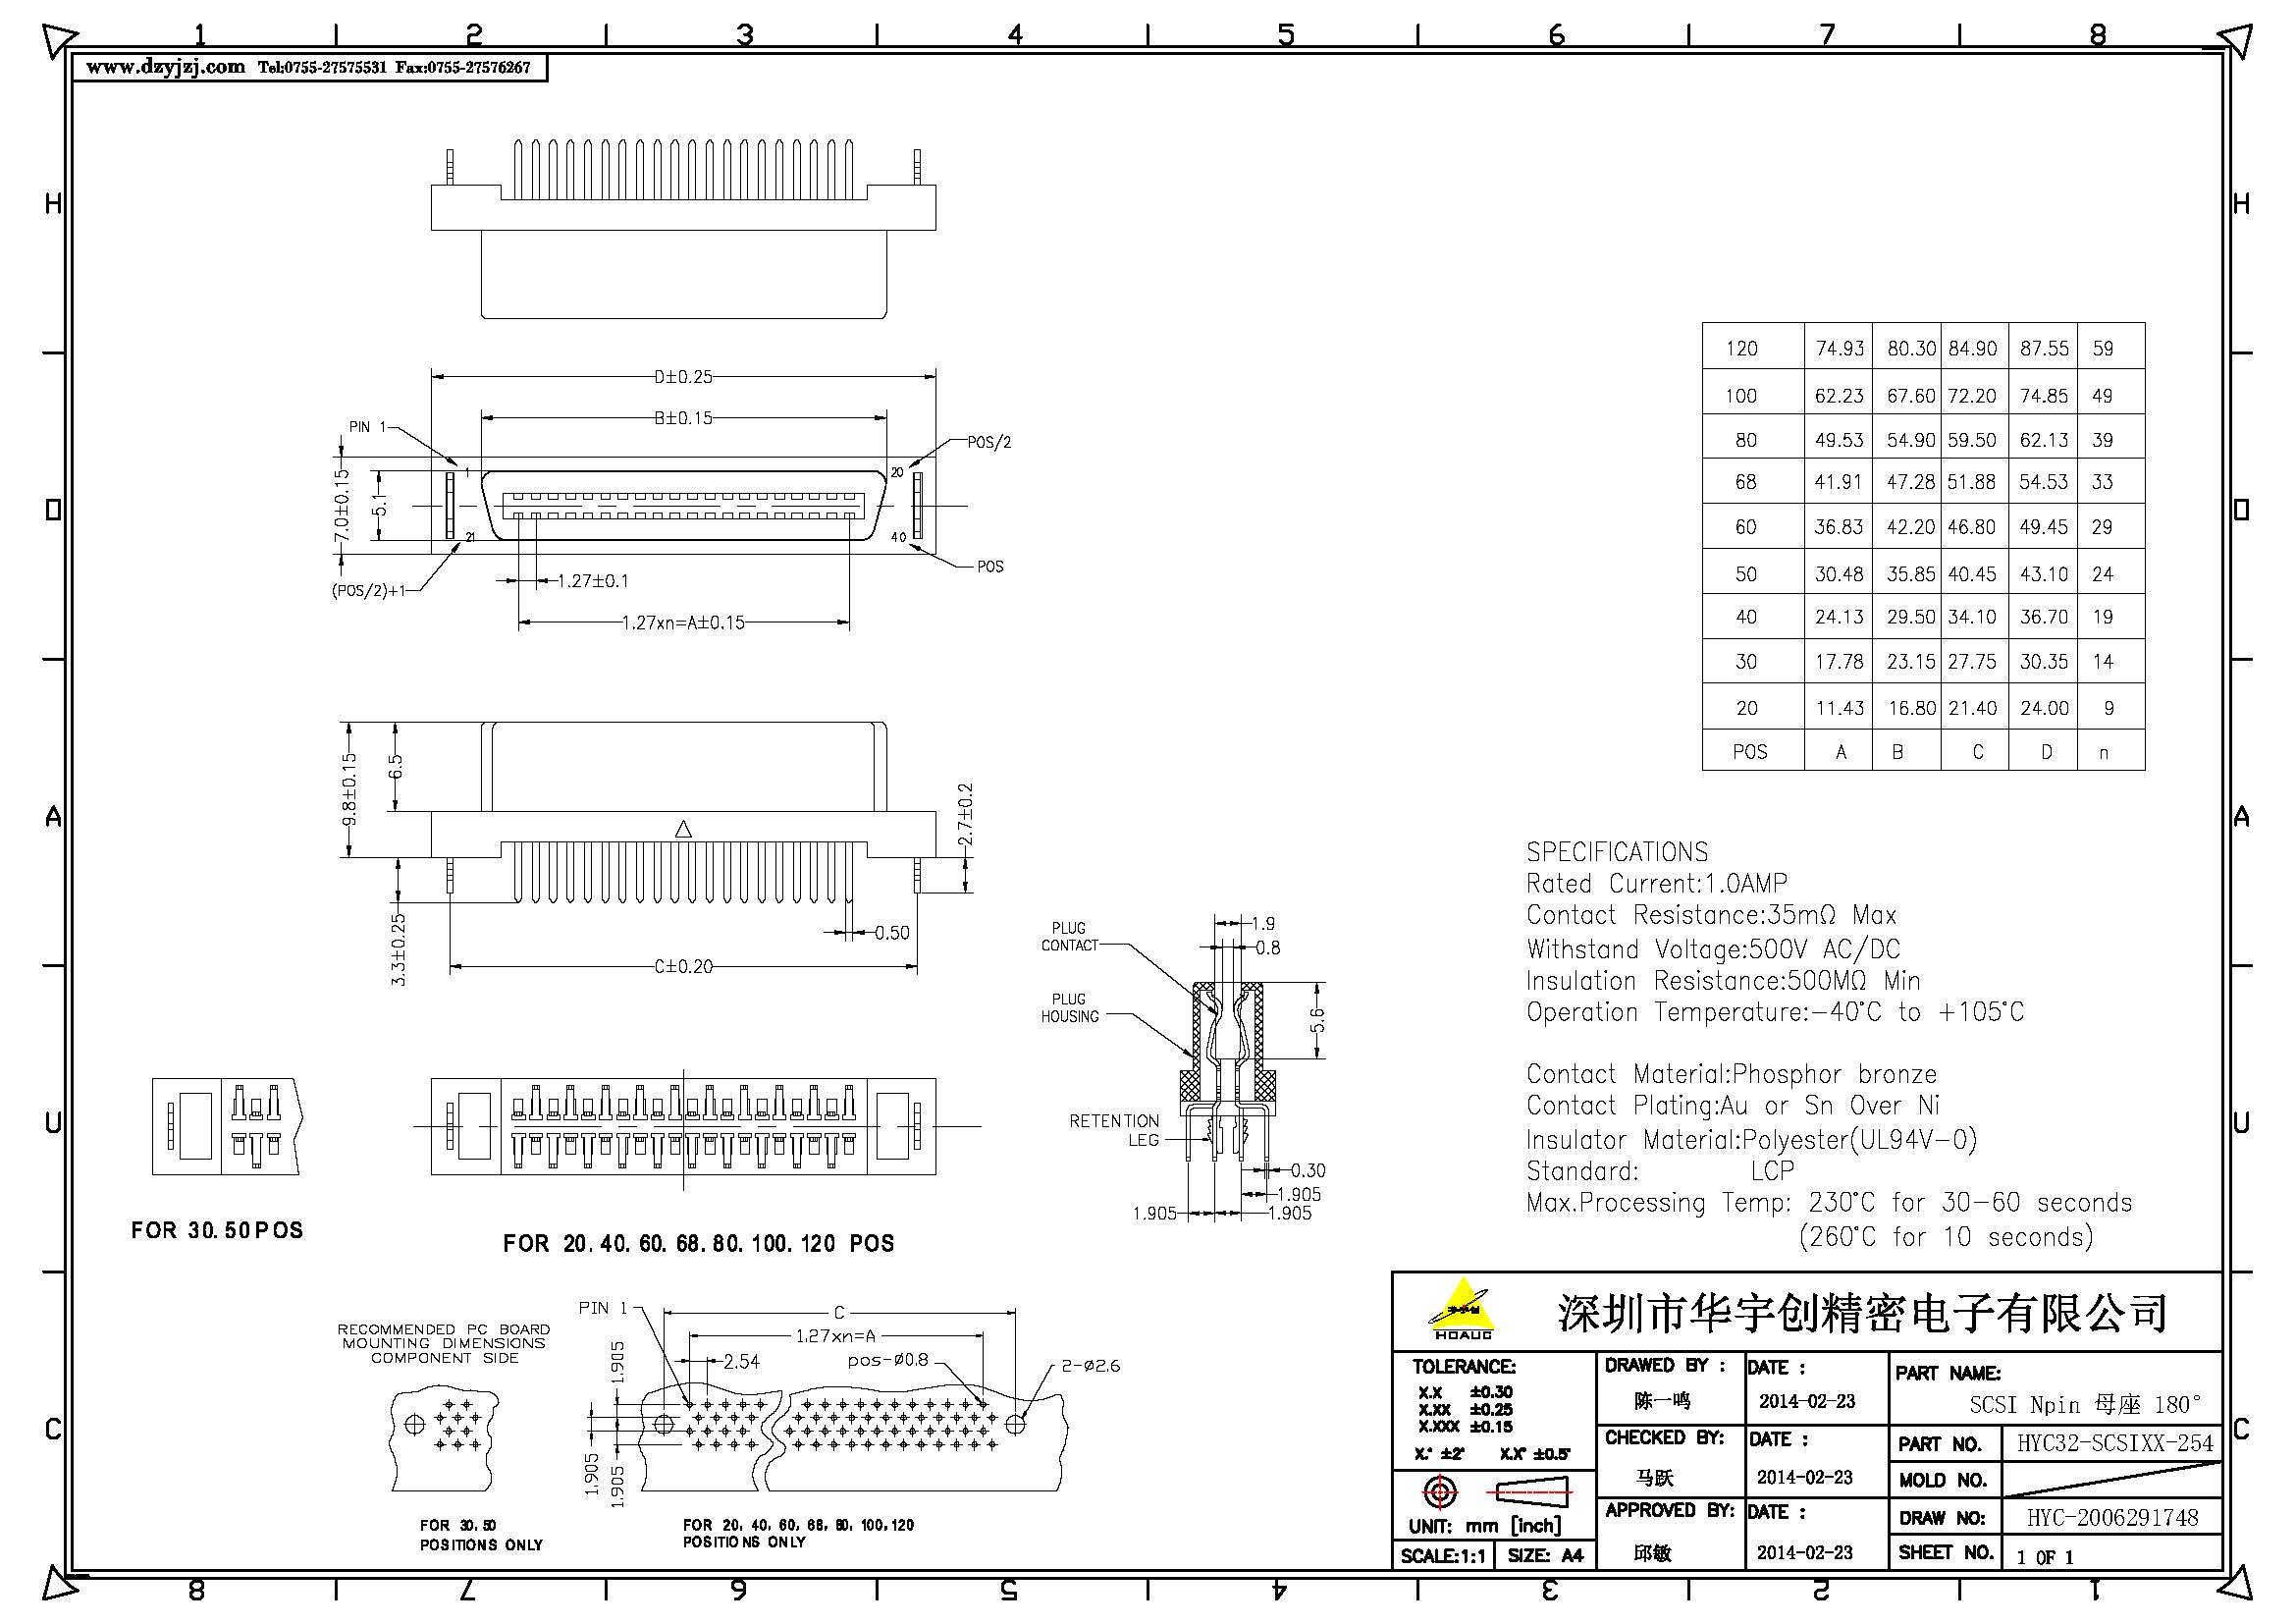 SCSI Npin 母座 180°产品图.jpg